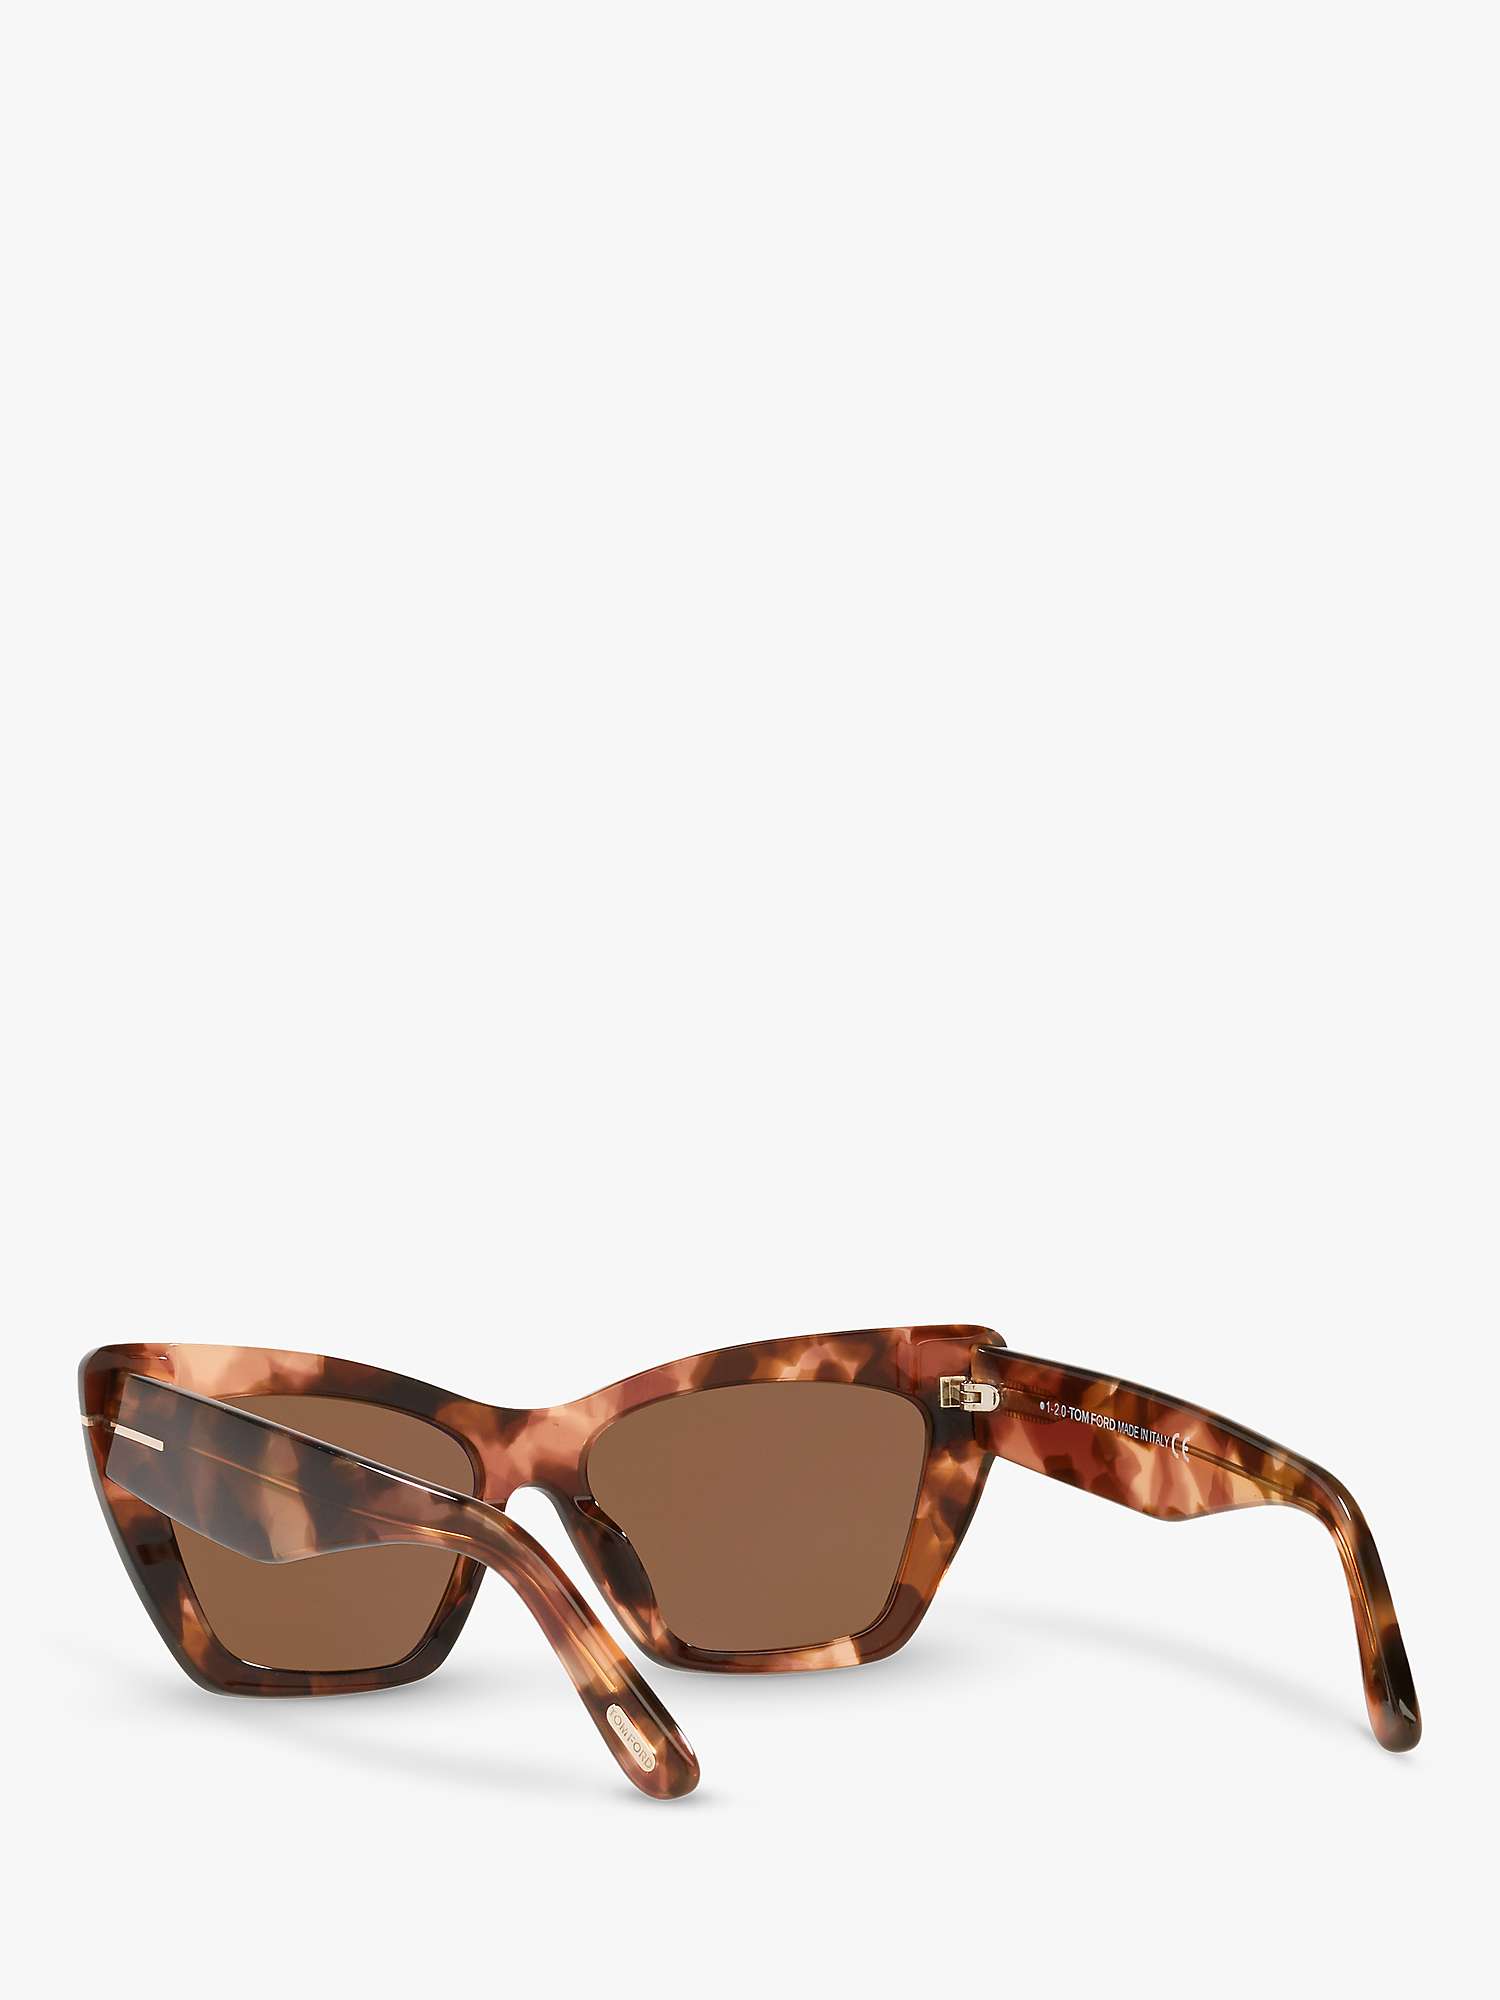 Buy TOM FORD FT0871 Women's Wyatt Cat's Eye Sunglasses, Tortoise/Brown Online at johnlewis.com